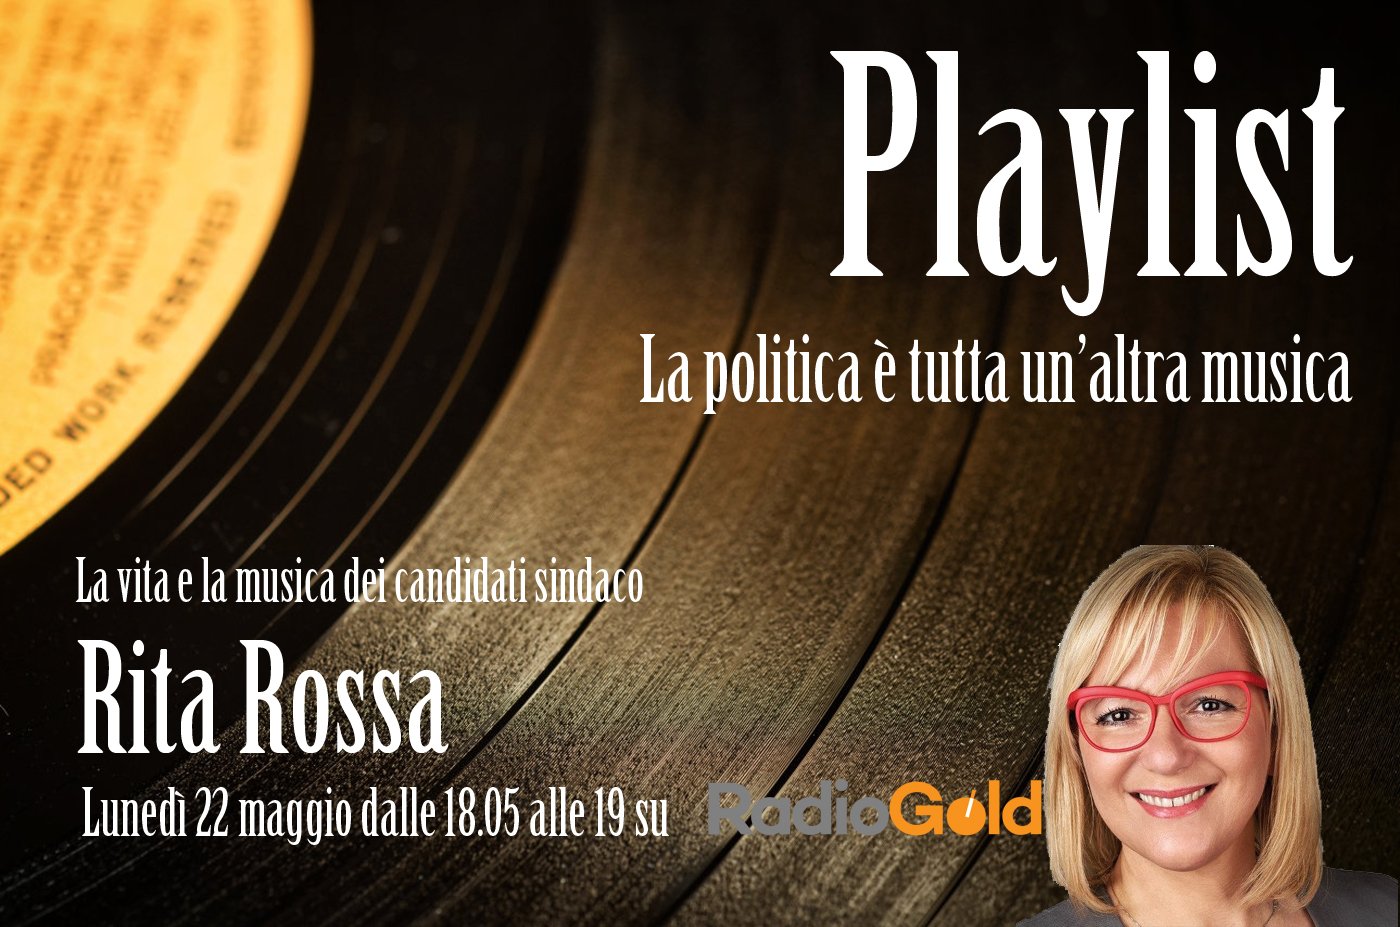 La playlist di Rita Rossa